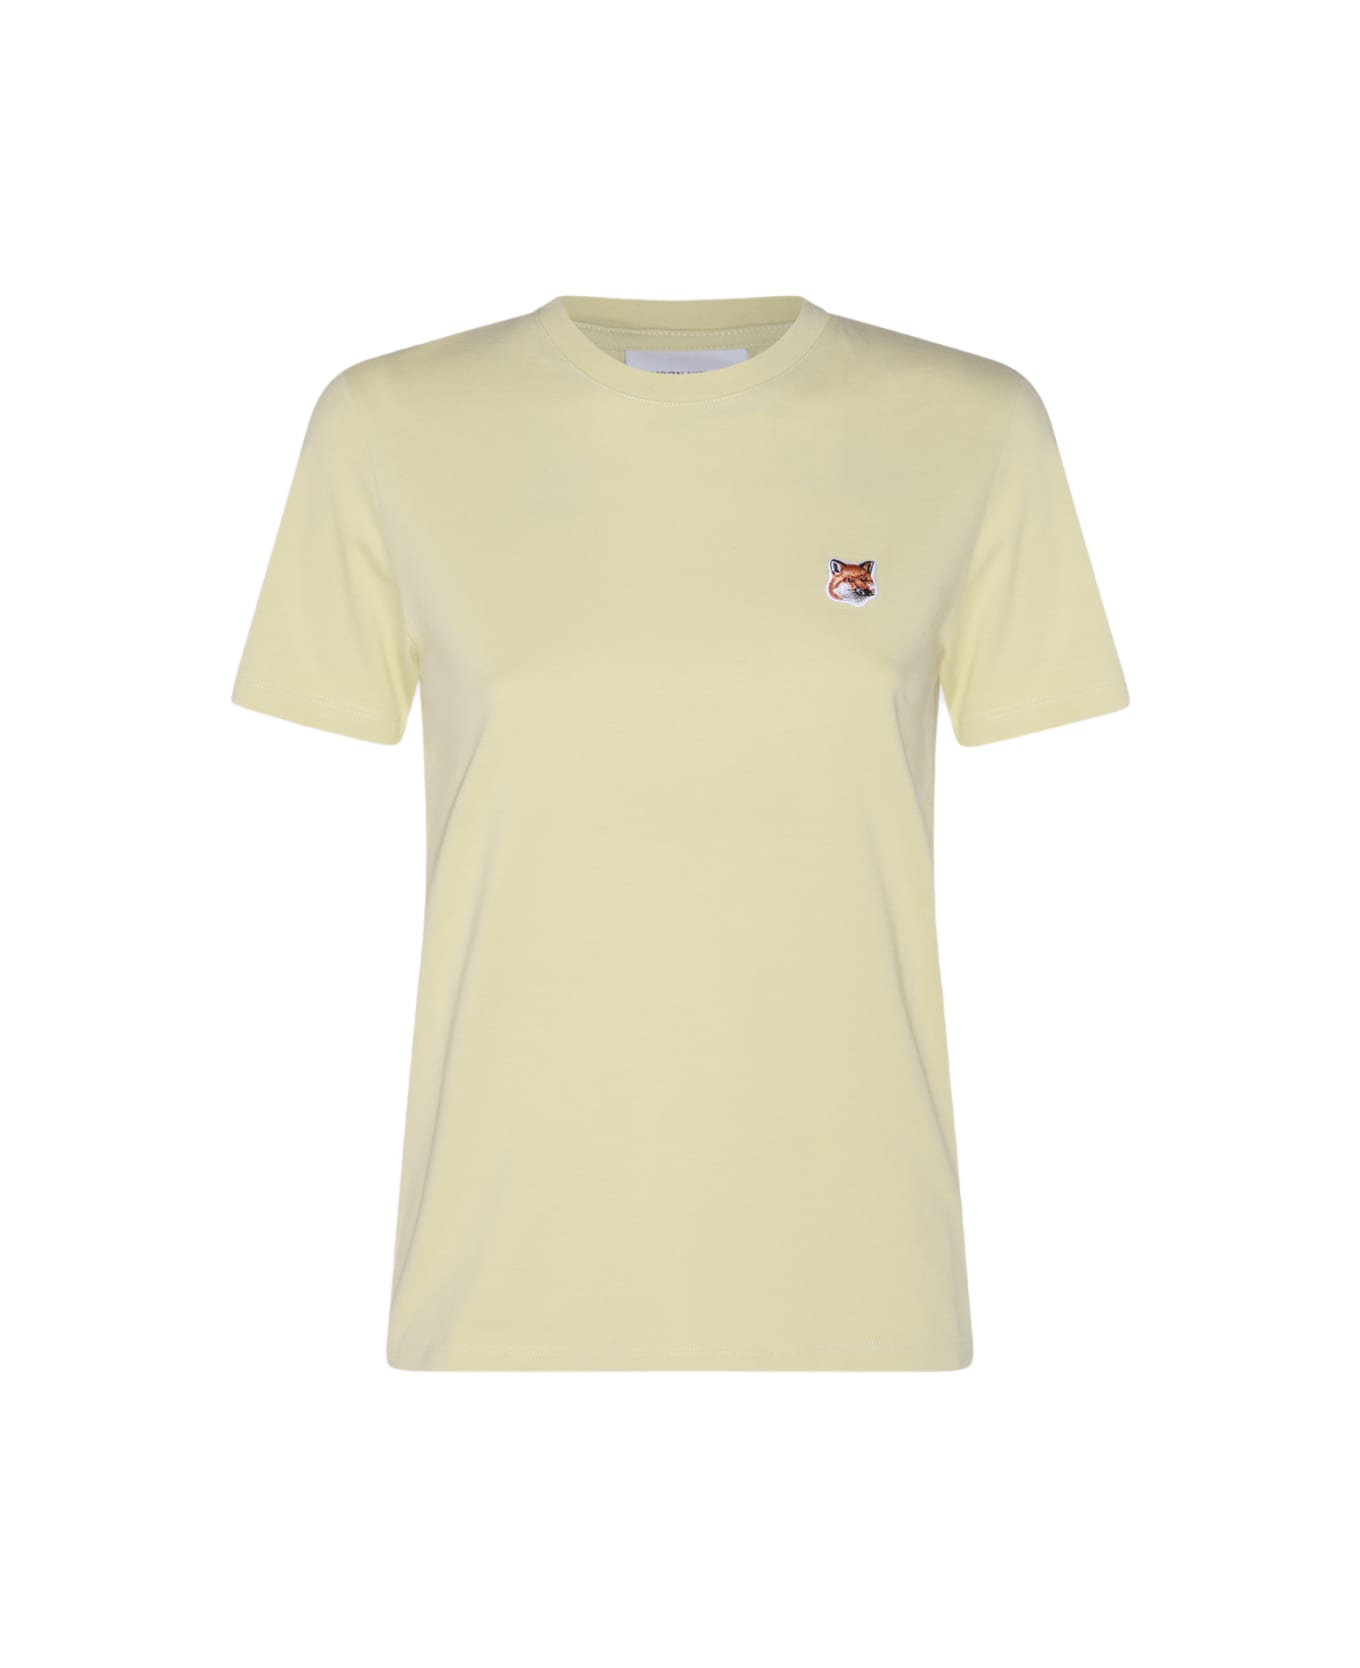 Maison Kitsuné Yellow Cotton Fox Head T-shirt - CHALK YELLOW Tシャツ